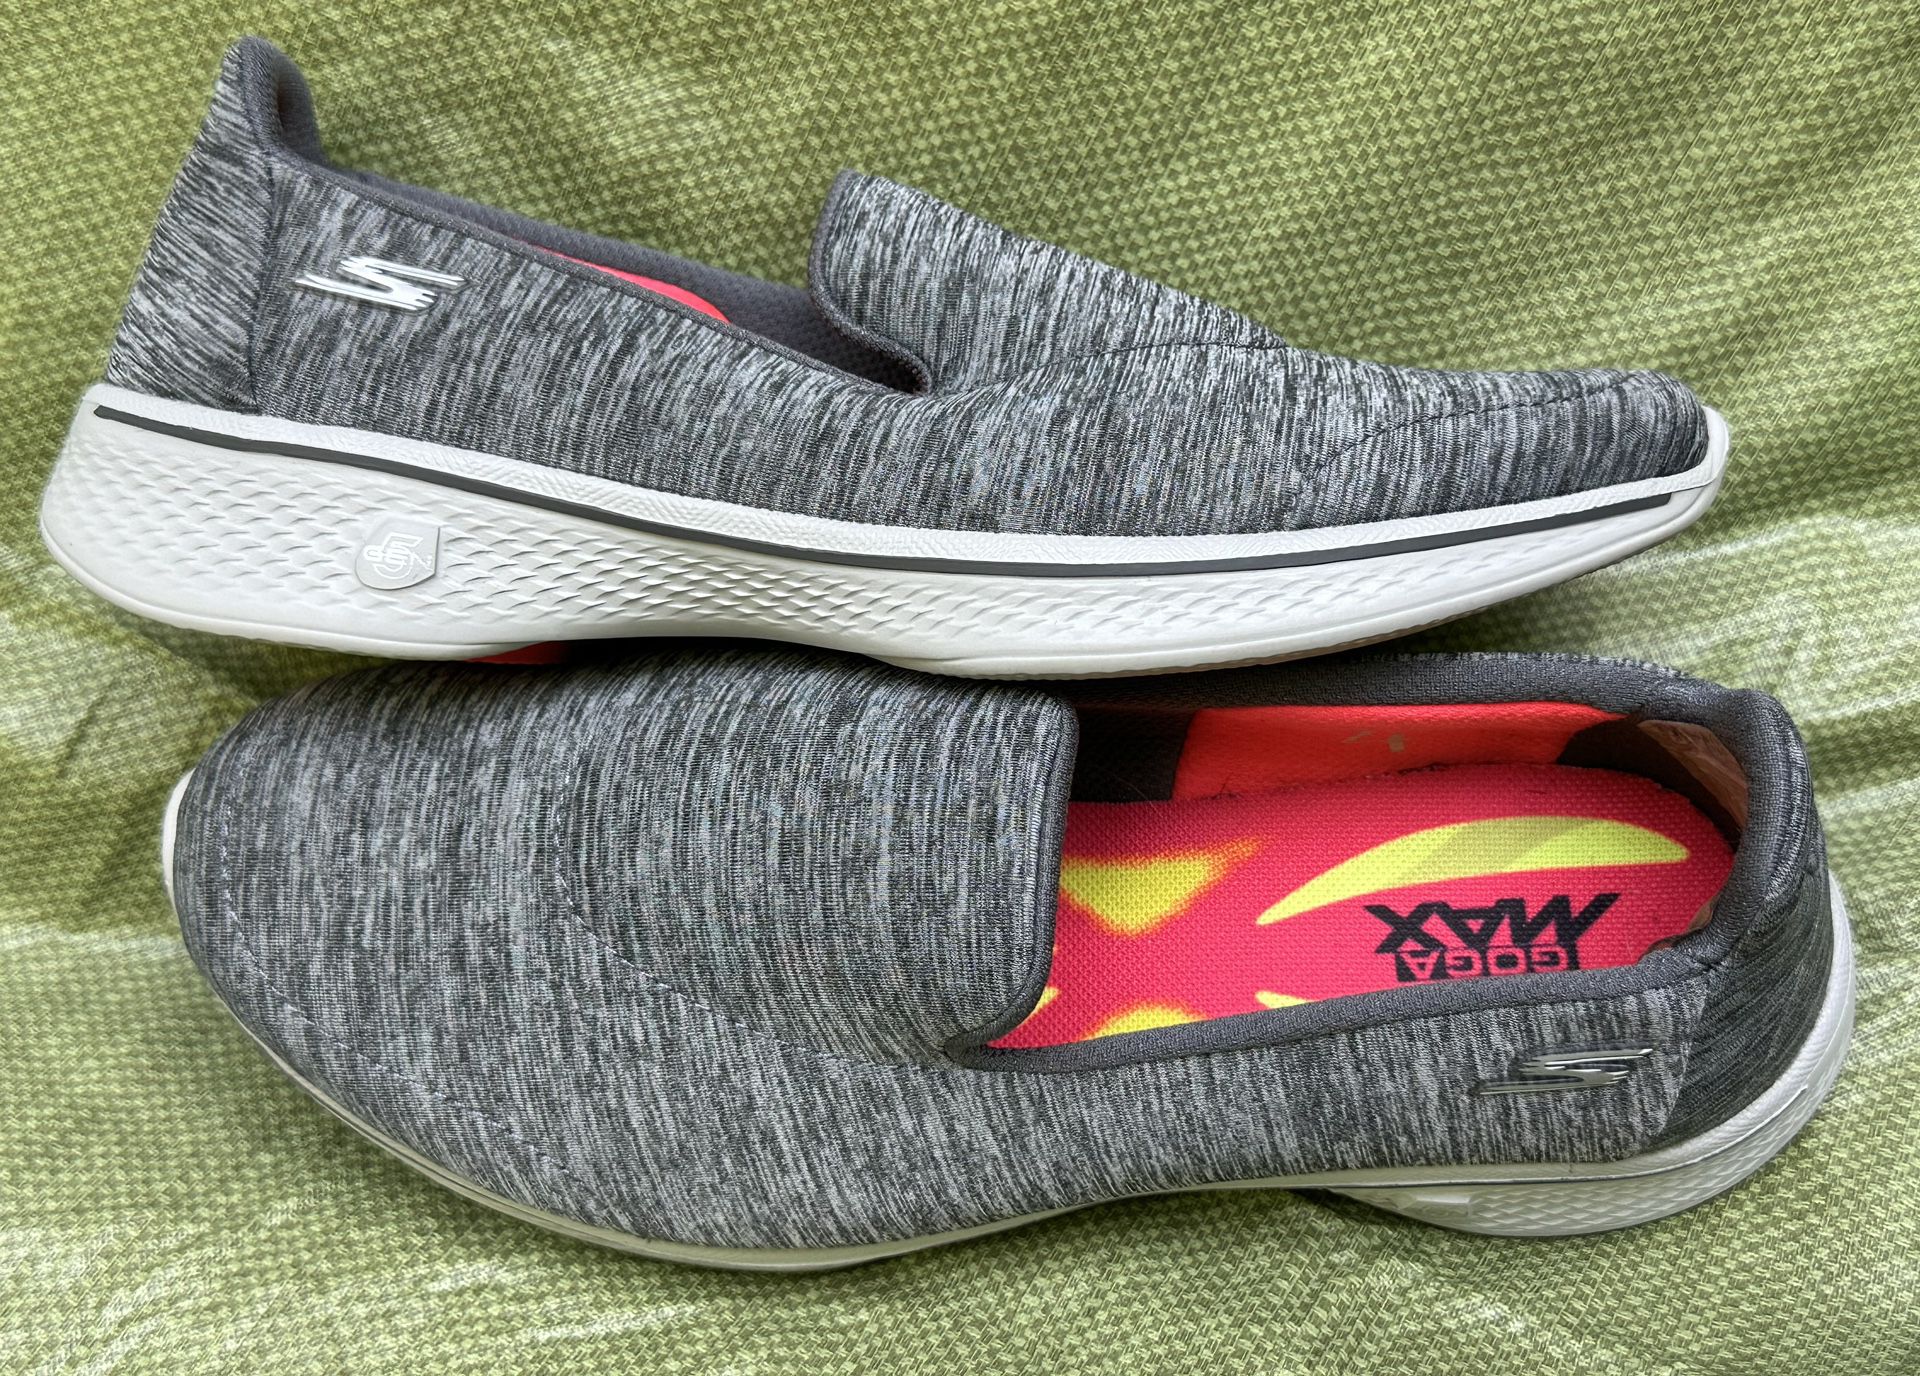 SKECHERS Go Walk 4 Women's Size 7 Gray Casual Shoes Slip On 14165W for Sale in Dallas, GA - OfferUp